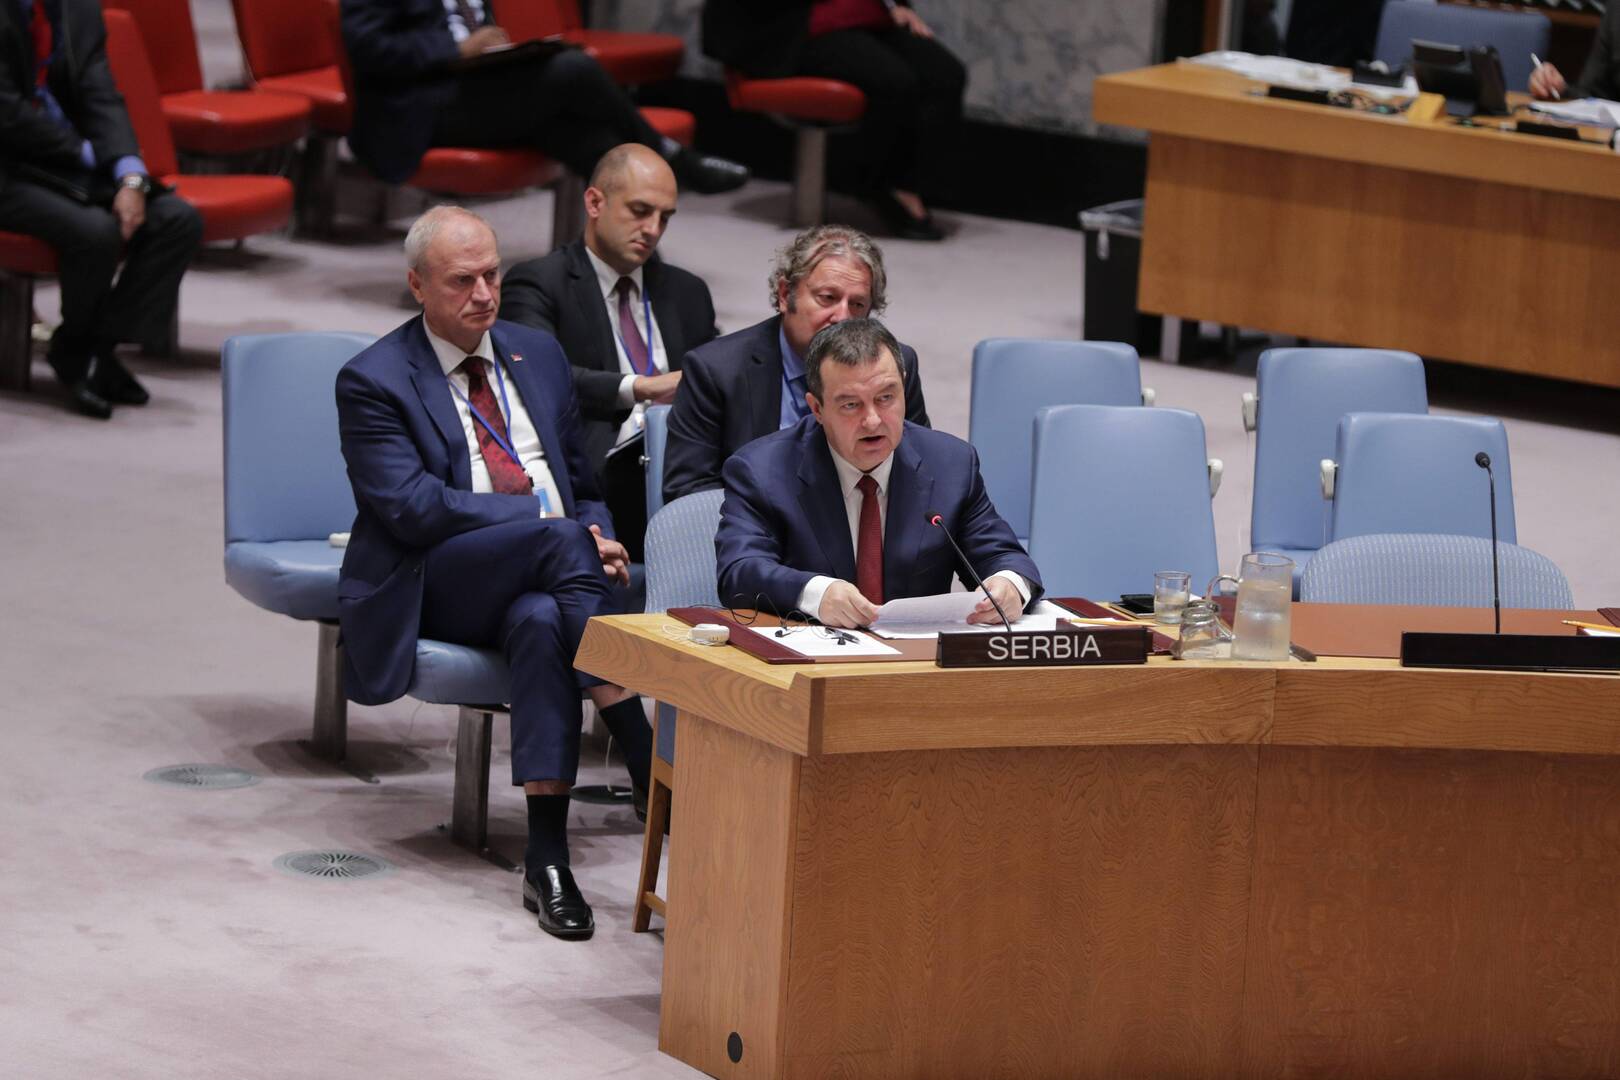 صربيا تطلب رسميا عقد اجتماع طارئ لمجلس الأمن الدولي حول كوسوفو